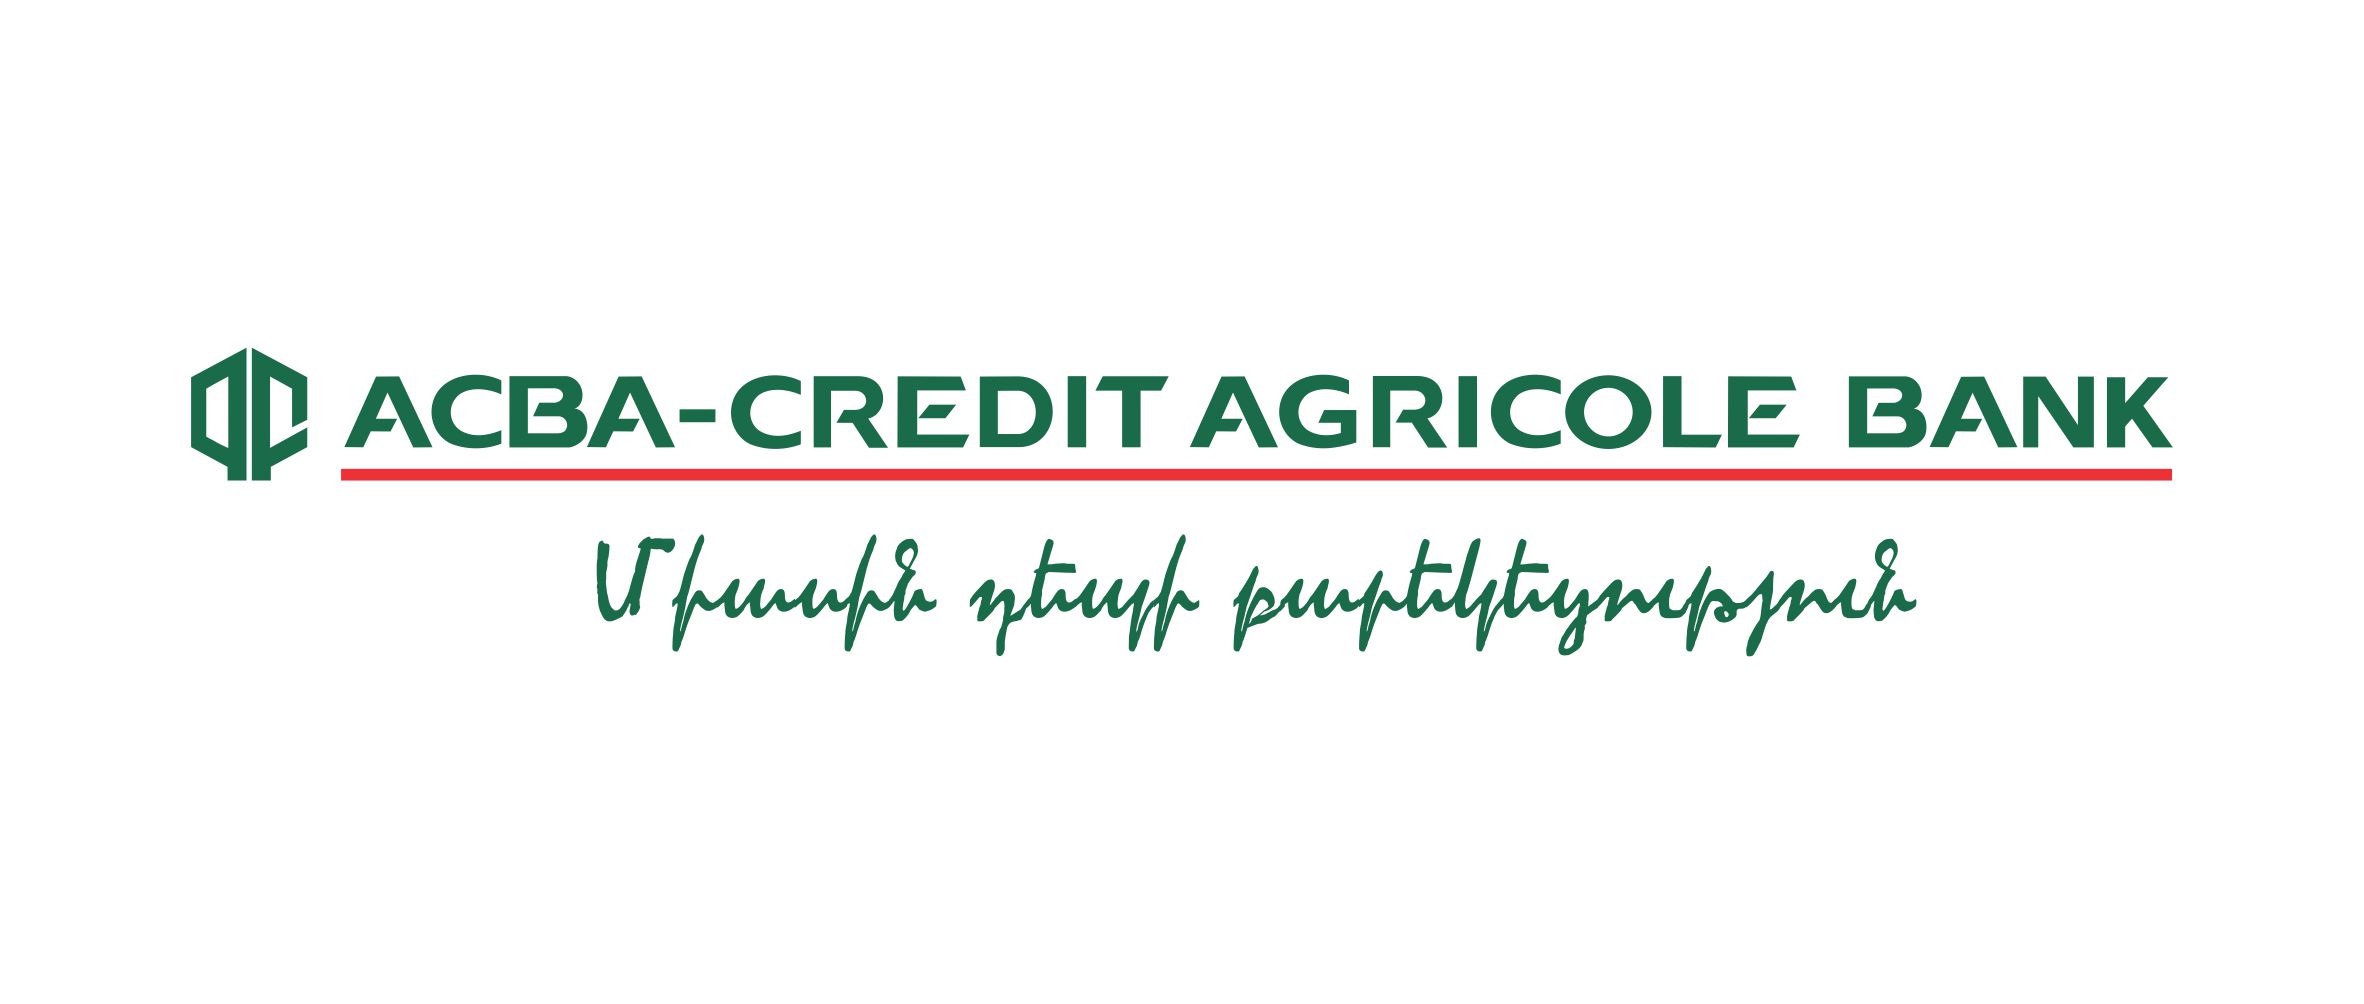 ACBA-Credit Agricole Bank приступил к публичному размещению драмовых облигаций в объеме 1 млрд